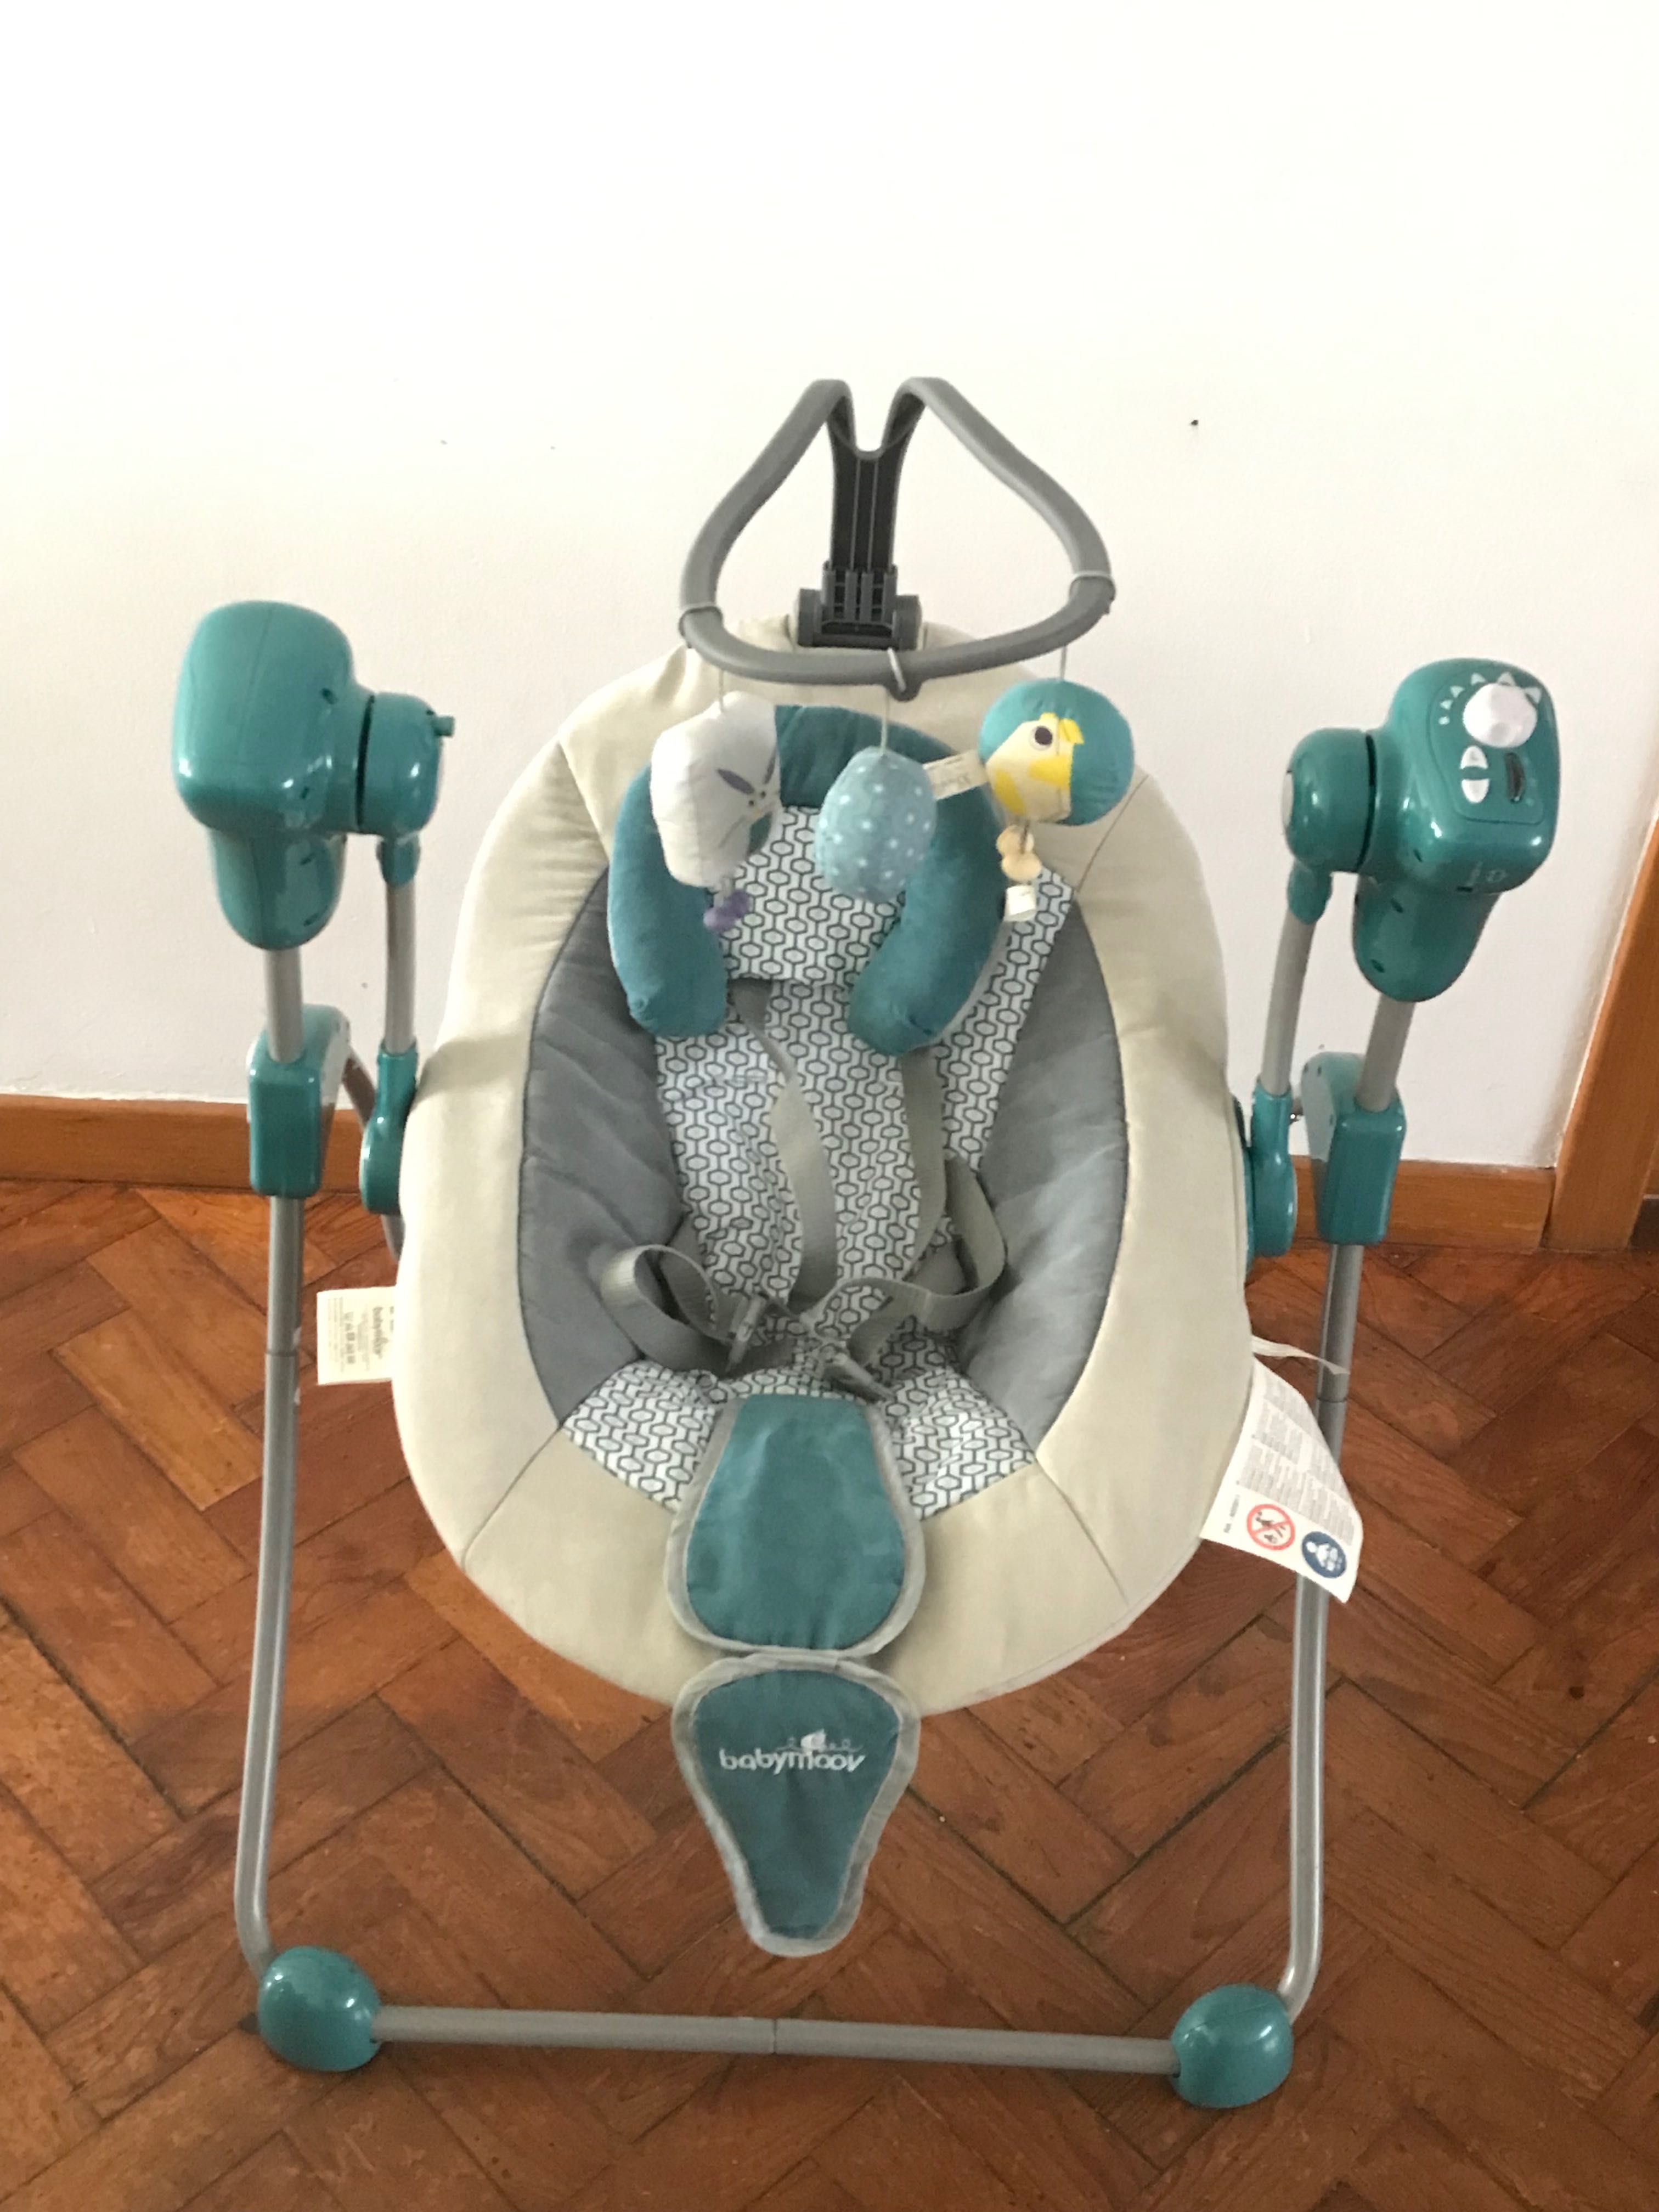 Espreguiçadeira eléctrica para bebés ARI